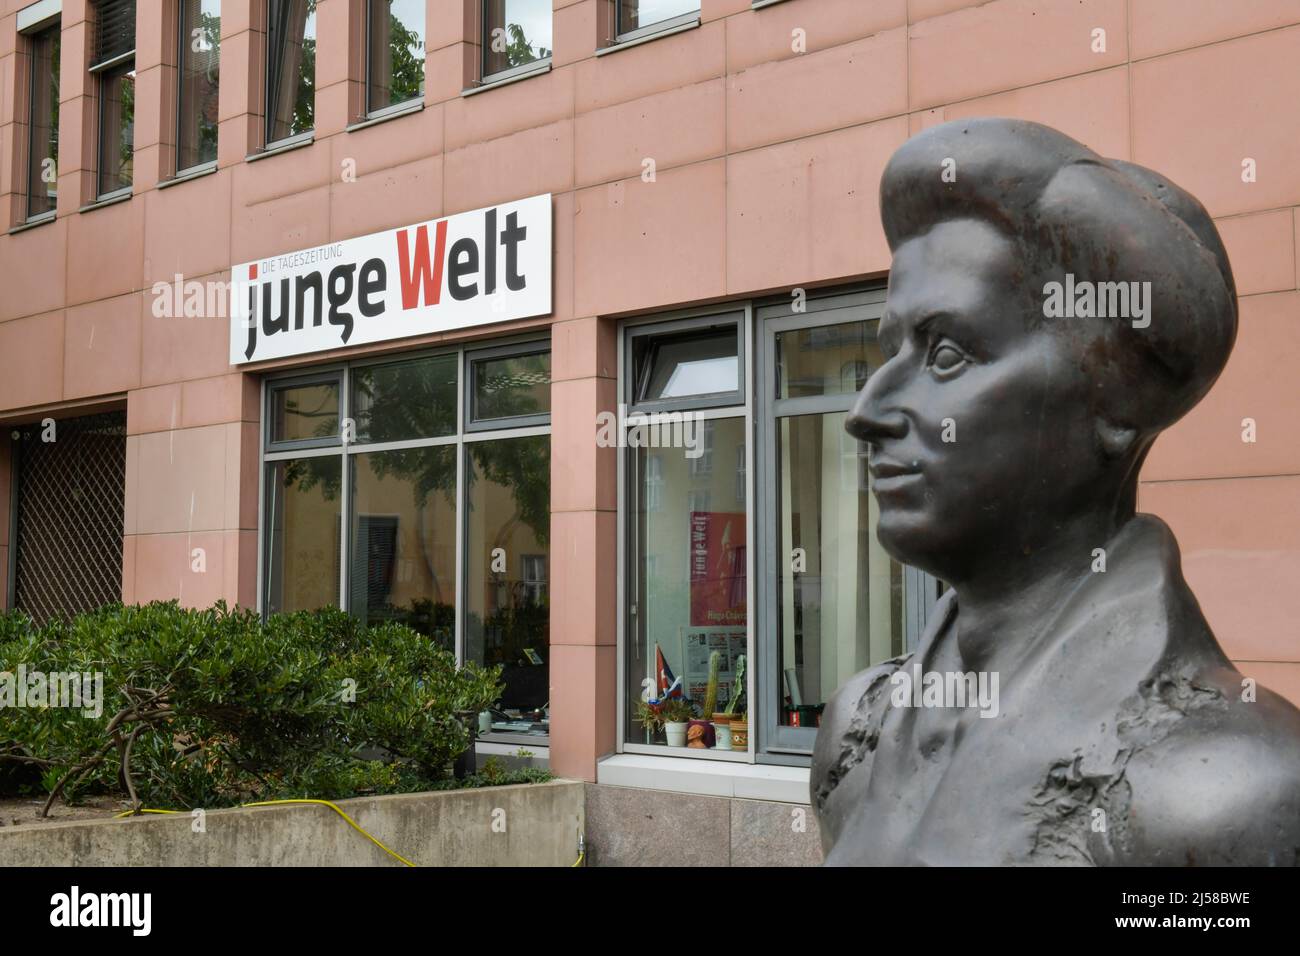 Verlag und Redaktion Zeitung Junge Welt, Rosa Luxemburg Memorial, Weydingerstrasse, Mitte, Berlin, Allemagne Banque D'Images